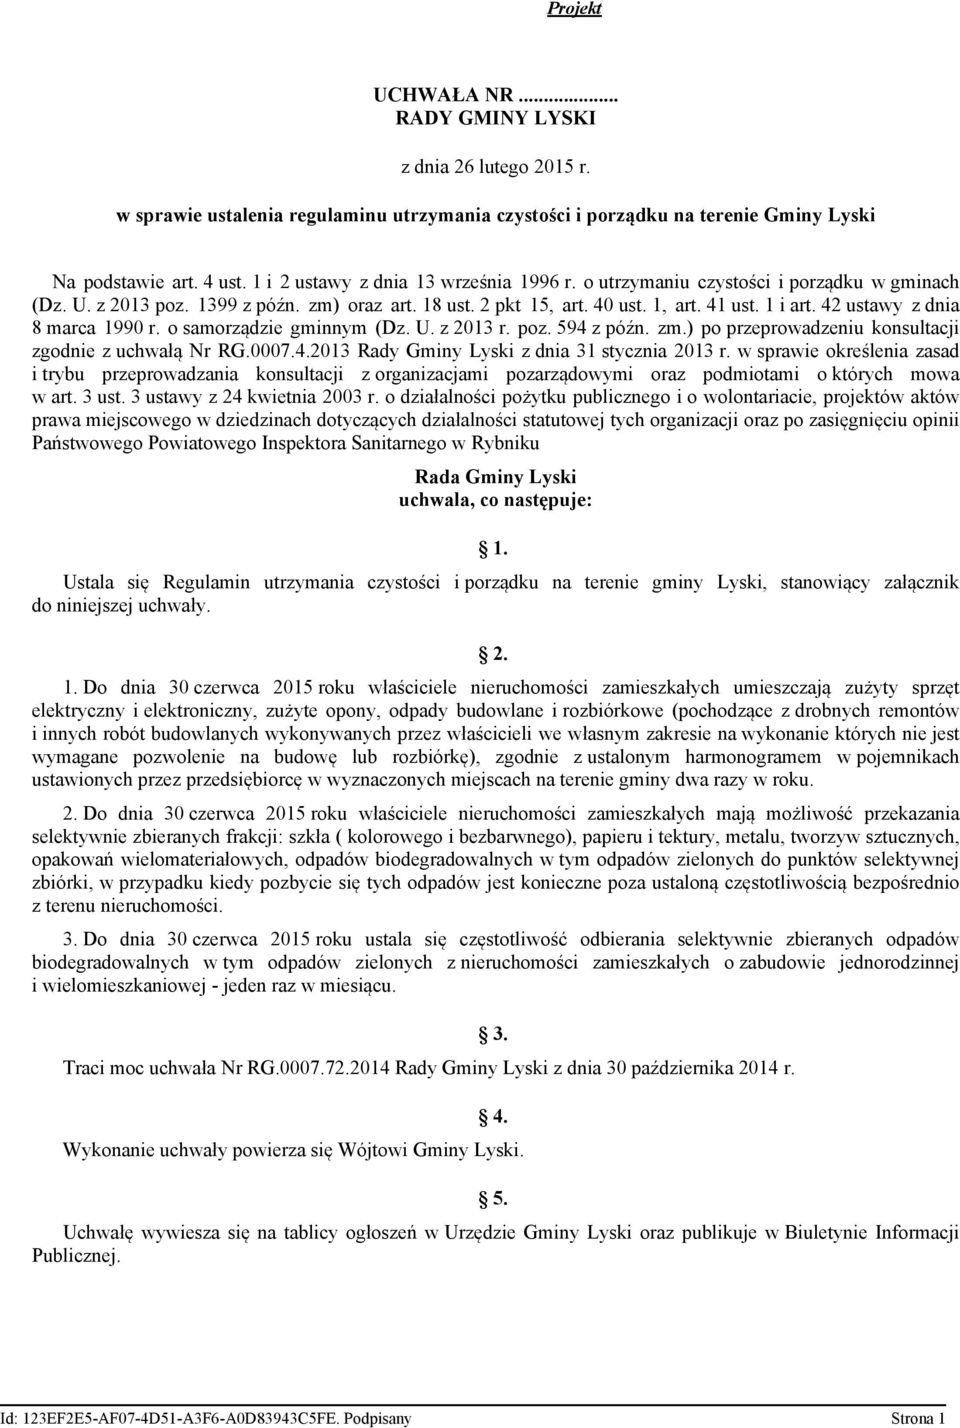 42 ustawy z dnia 8 marca 1990 r. o samorządzie gminnym (Dz. U. z 2013 r. poz. 594 z późn. zm.) po przeprowadzeniu konsultacji zgodnie z uchwałą Nr RG.0007.4.2013 Rady Gminy Lyski z dnia 31 stycznia 2013 r.